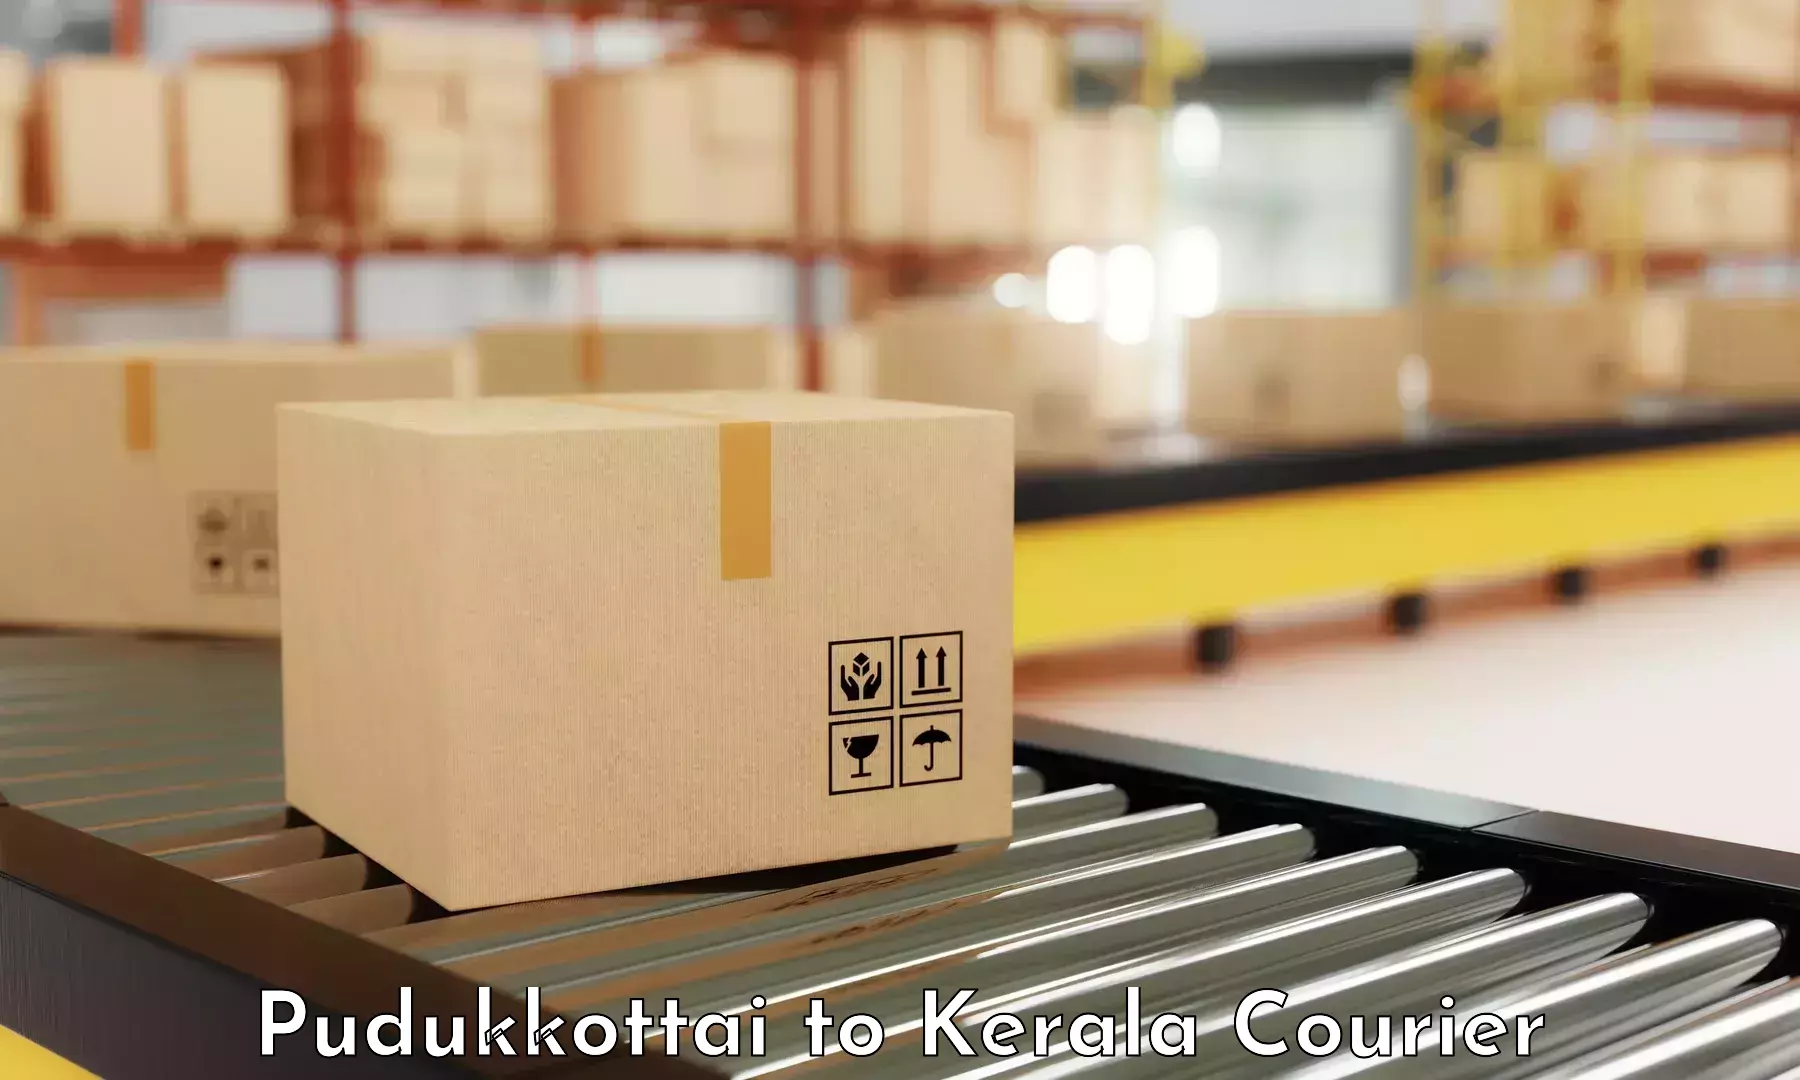 Customer-centric shipping Pudukkottai to Kumily